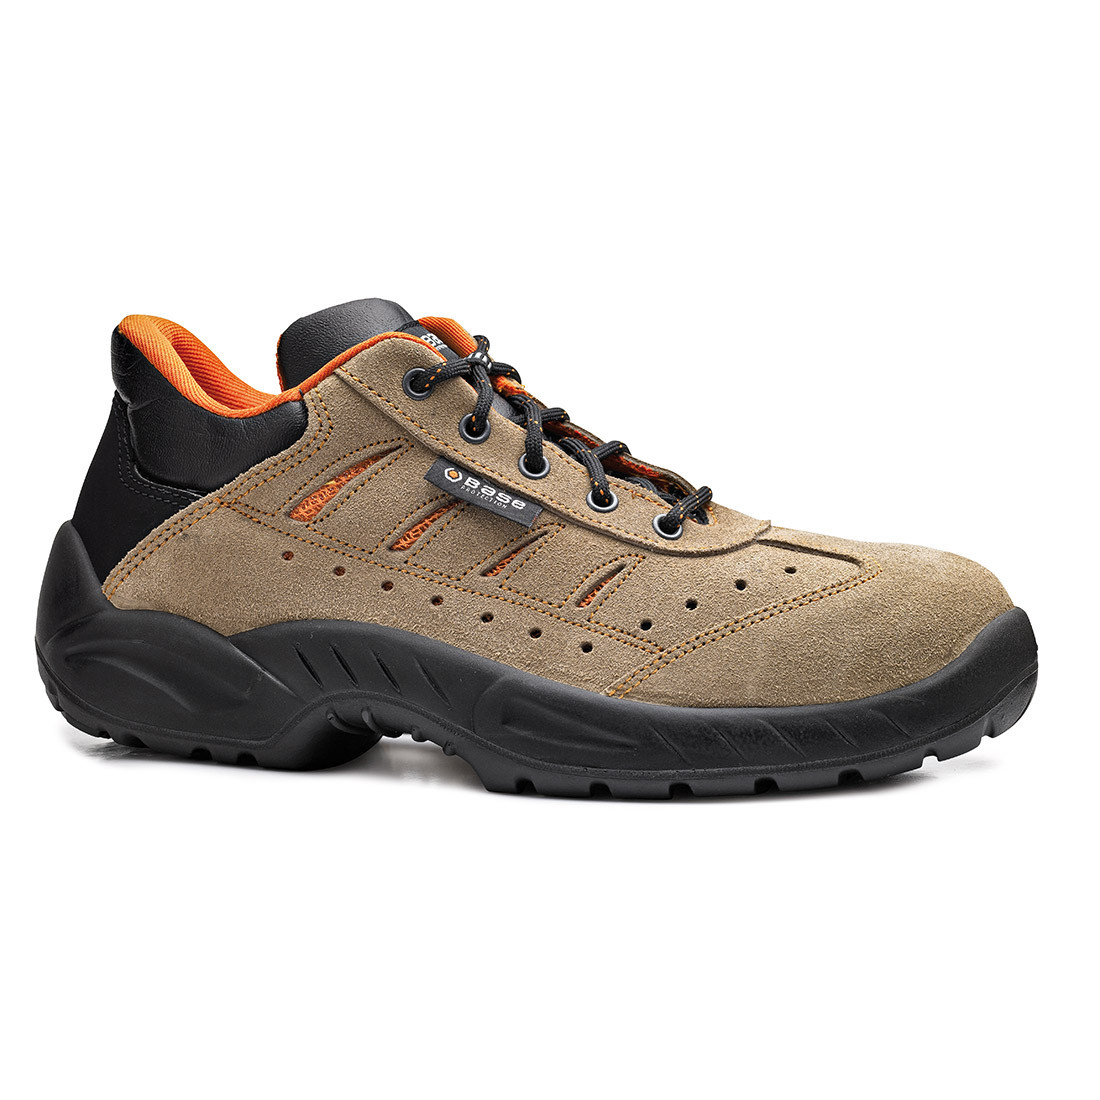 Pantofi Paddington S1P SRC - Incaltaminte de protectie | Bocanci, Pantofi, Sandale, Cizme